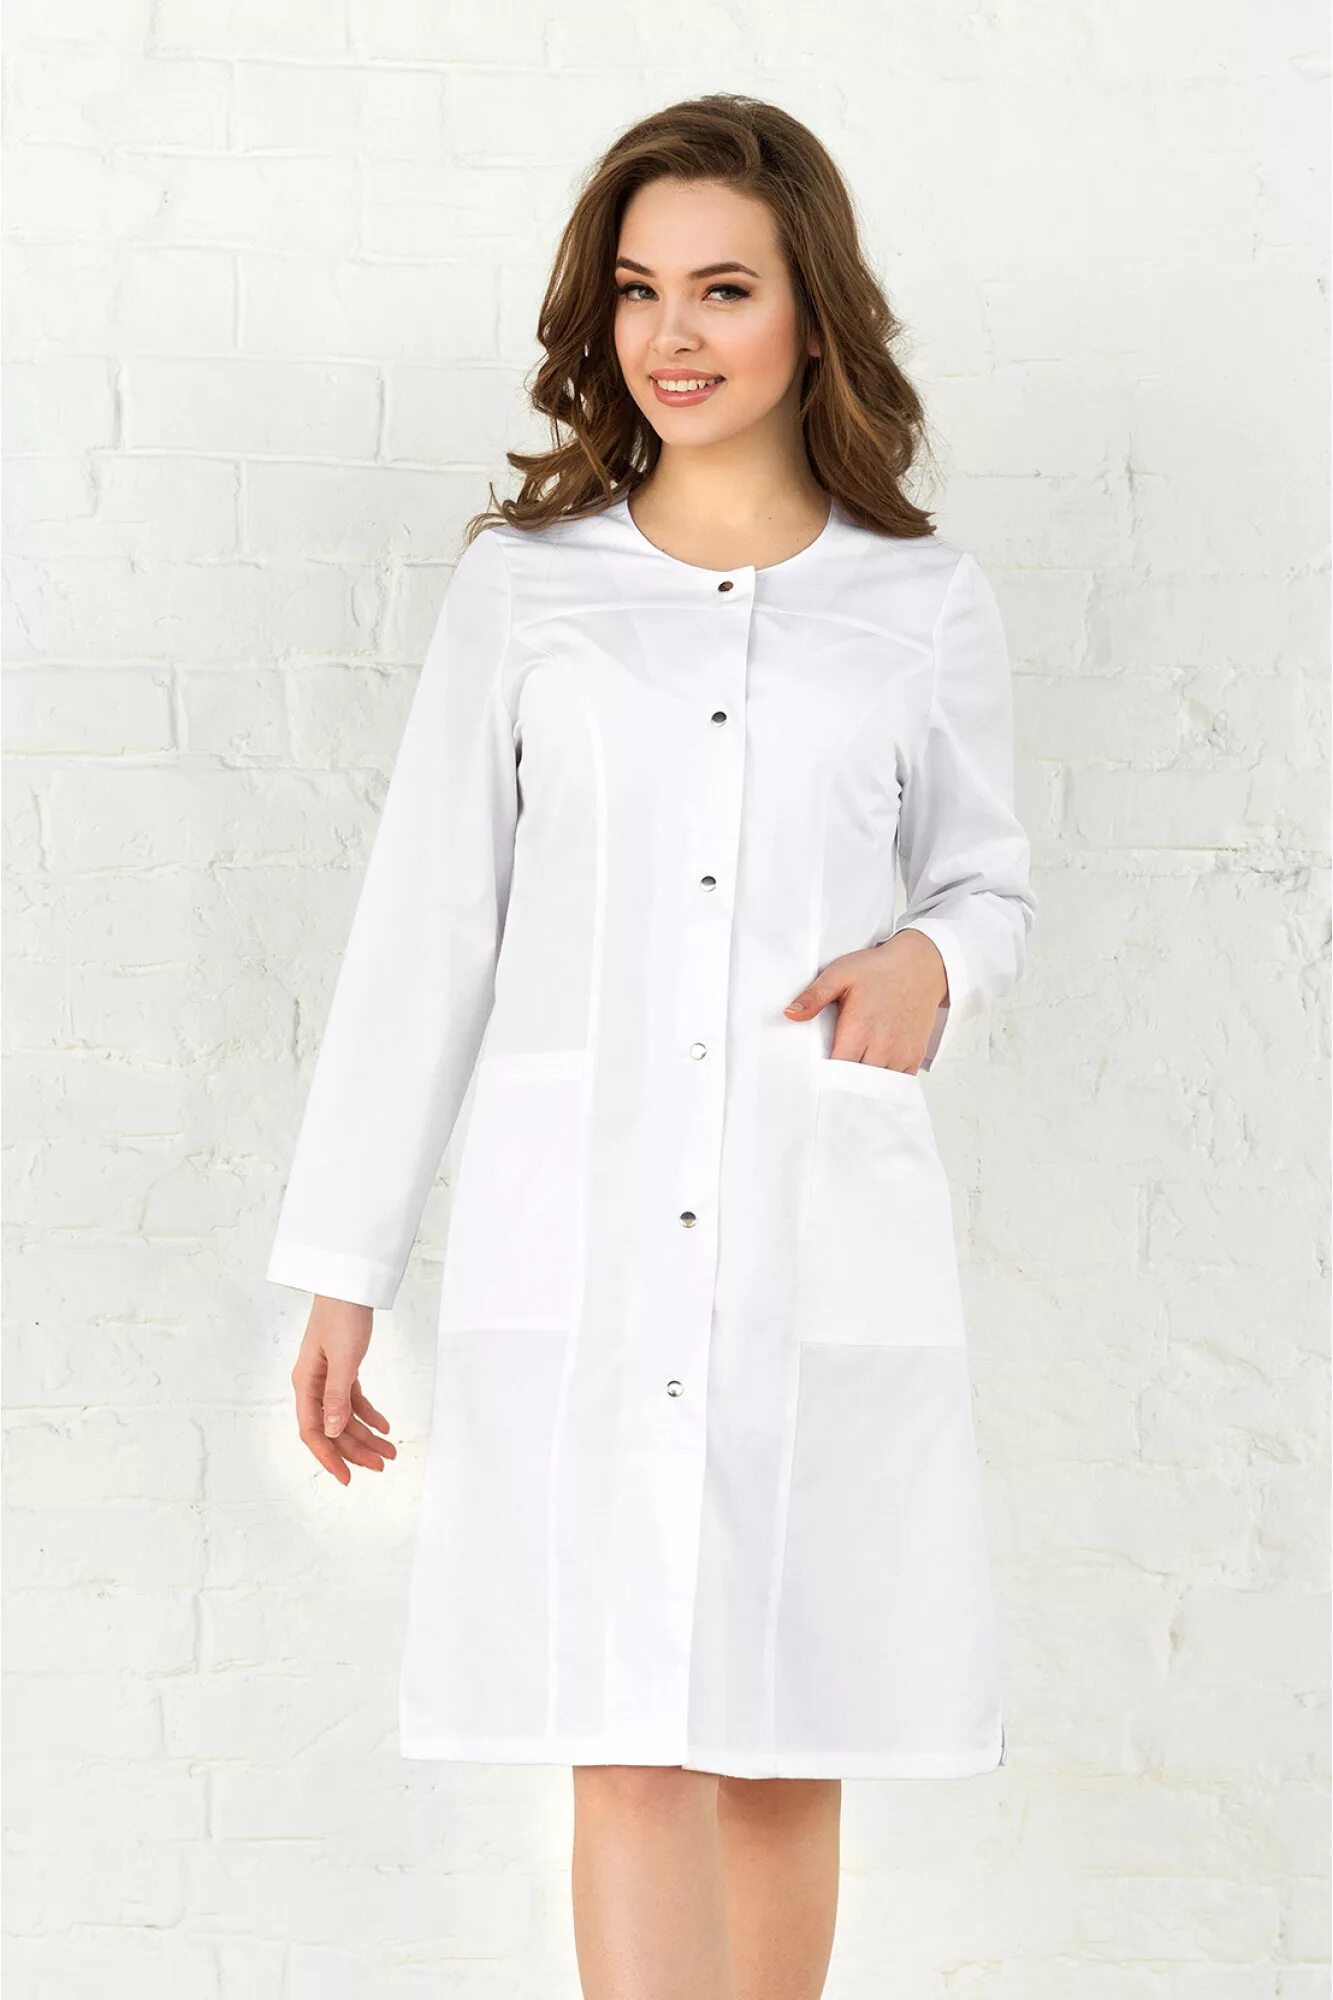 Медицинский халат-платье Медэлит. Халат белый медицинский вильдберис. Халат валберис медицинский 44 размер. Халат медицинский белый. Медицинский халат купить в спб